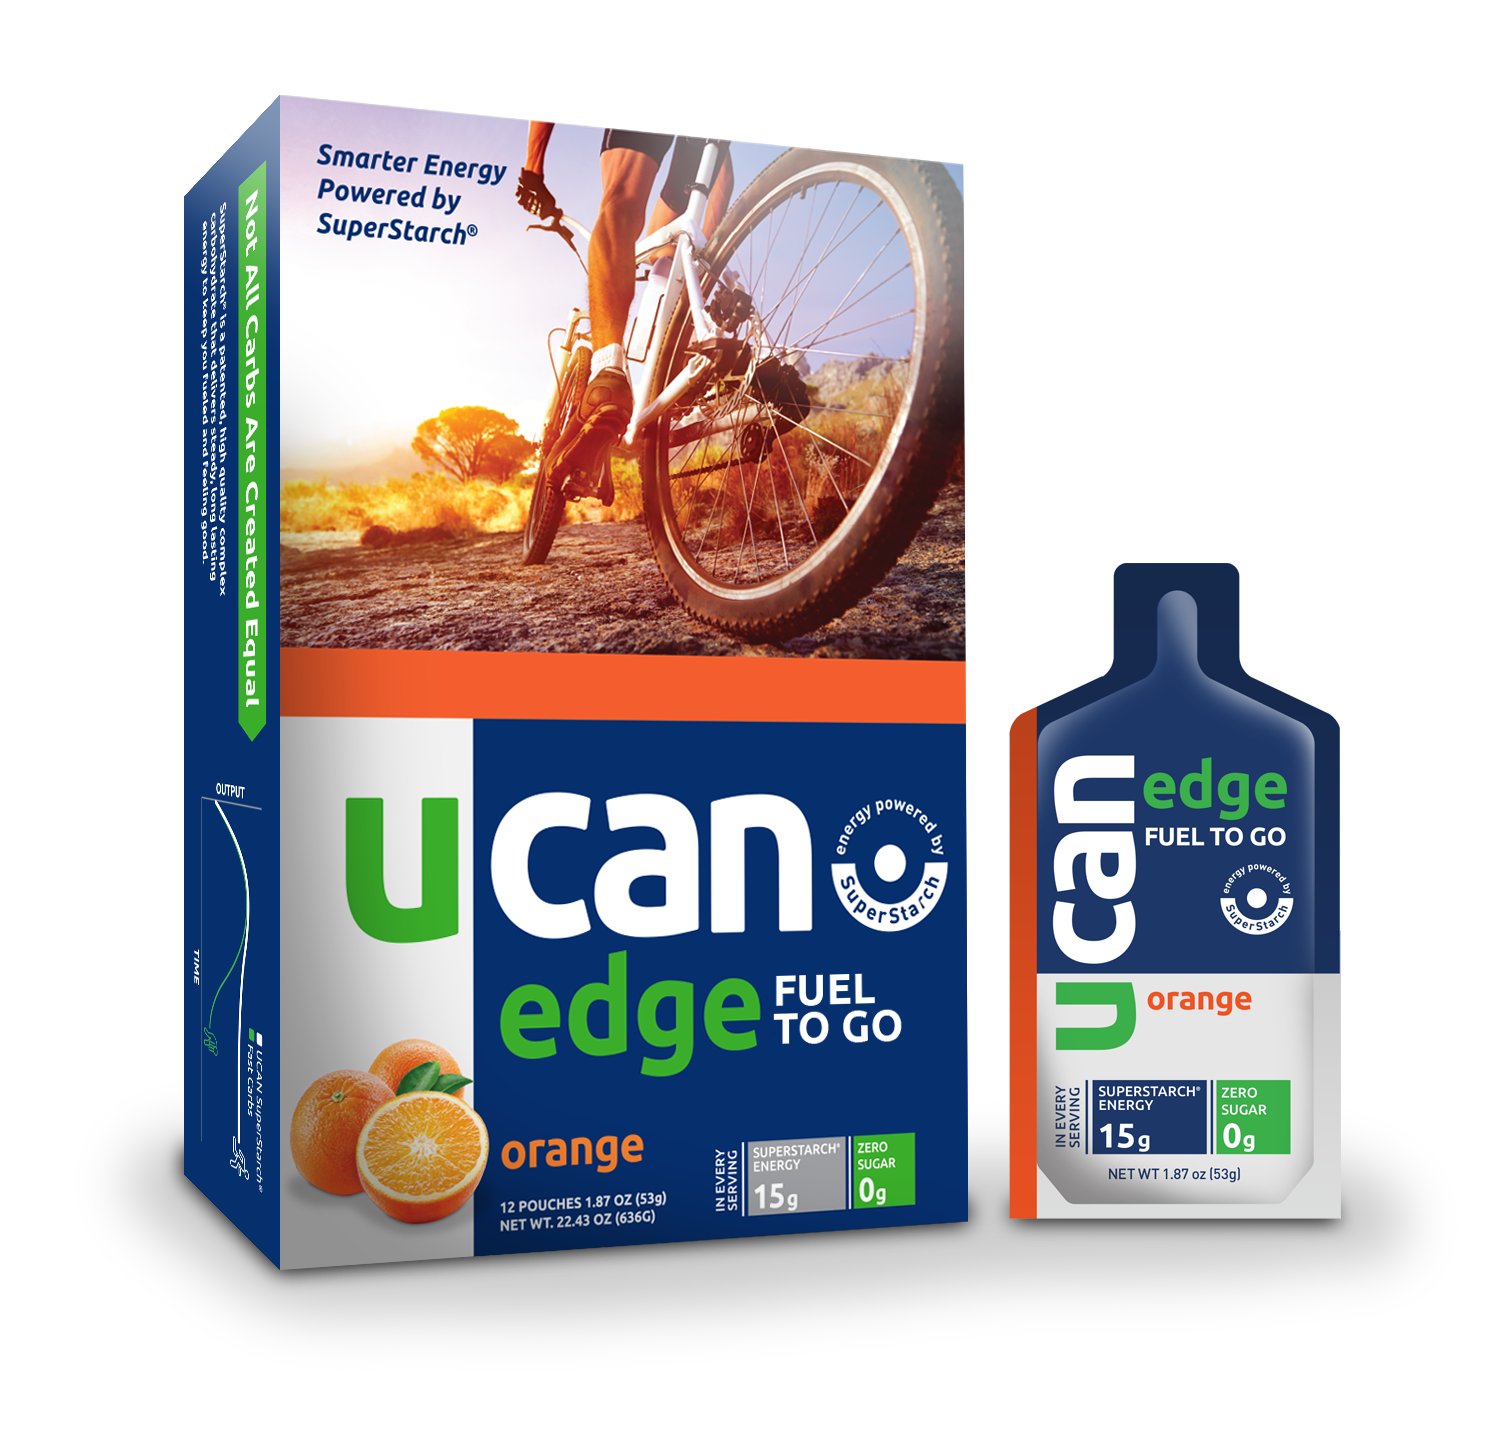 UCAN Edge Fuel to Go (Gel) - Orange 6 innerpacks per case 22.5 oz